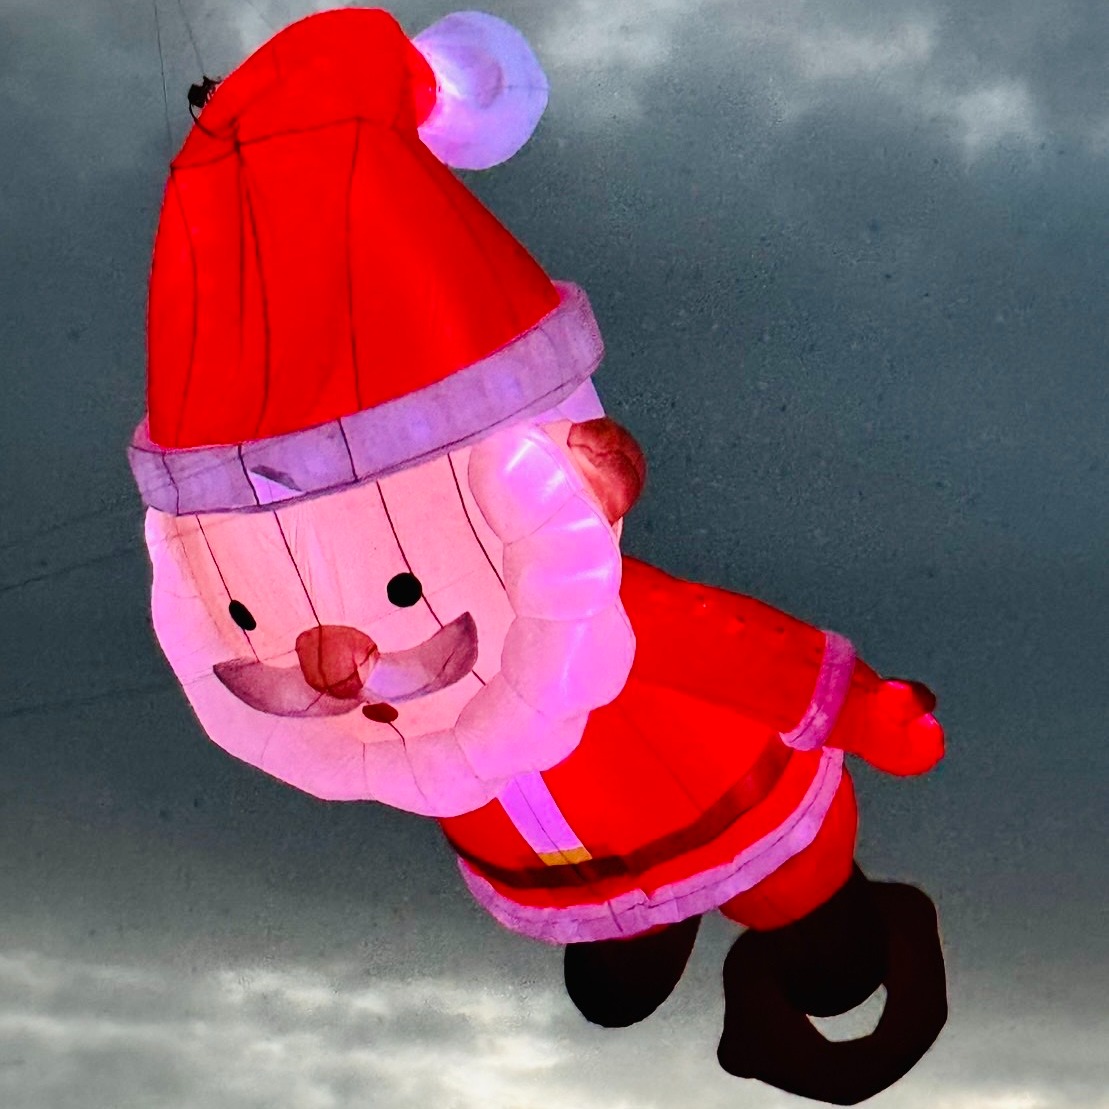 聖誕節限定版「聖誕老公公」夜光風箏。圖片來源：雲嘉南風管處